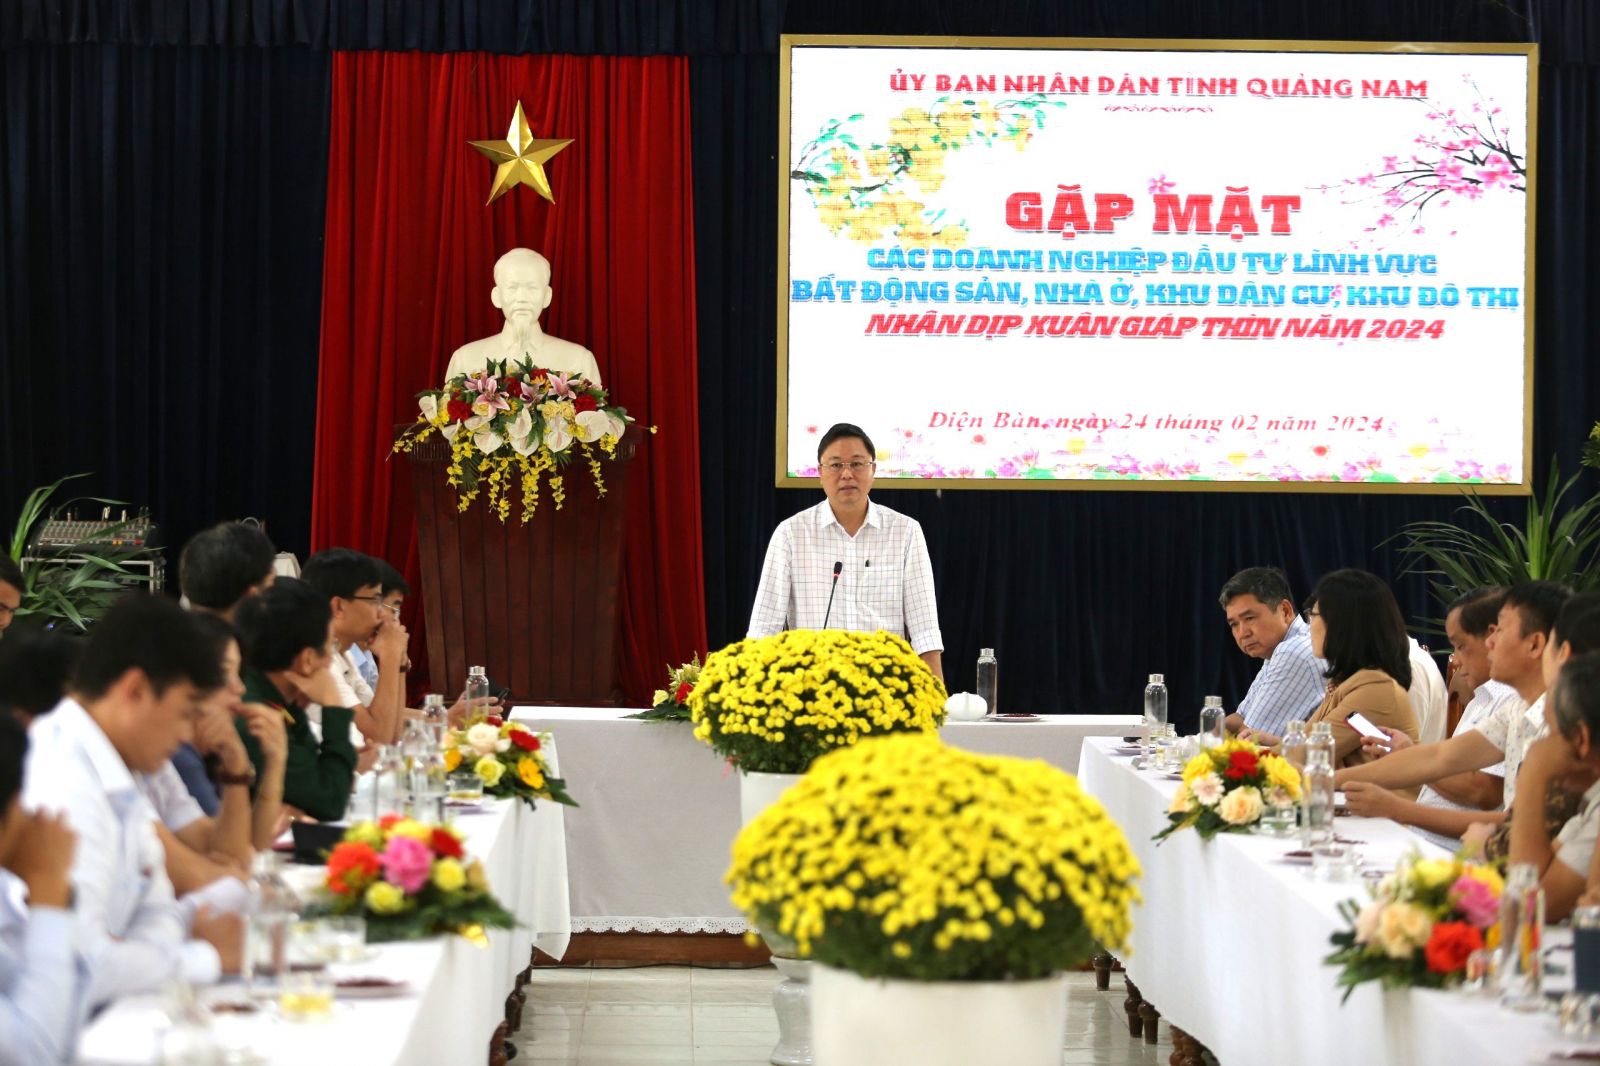  Buổi gặp mặt giữa Chủ tịch Quảng Nam Lê Trí Thanh với nhóm doanh nghiệp lĩnh vực bất động sản vừa qua đã nêu lên hàng loạt khó khăn cần sớm tháo gỡ.